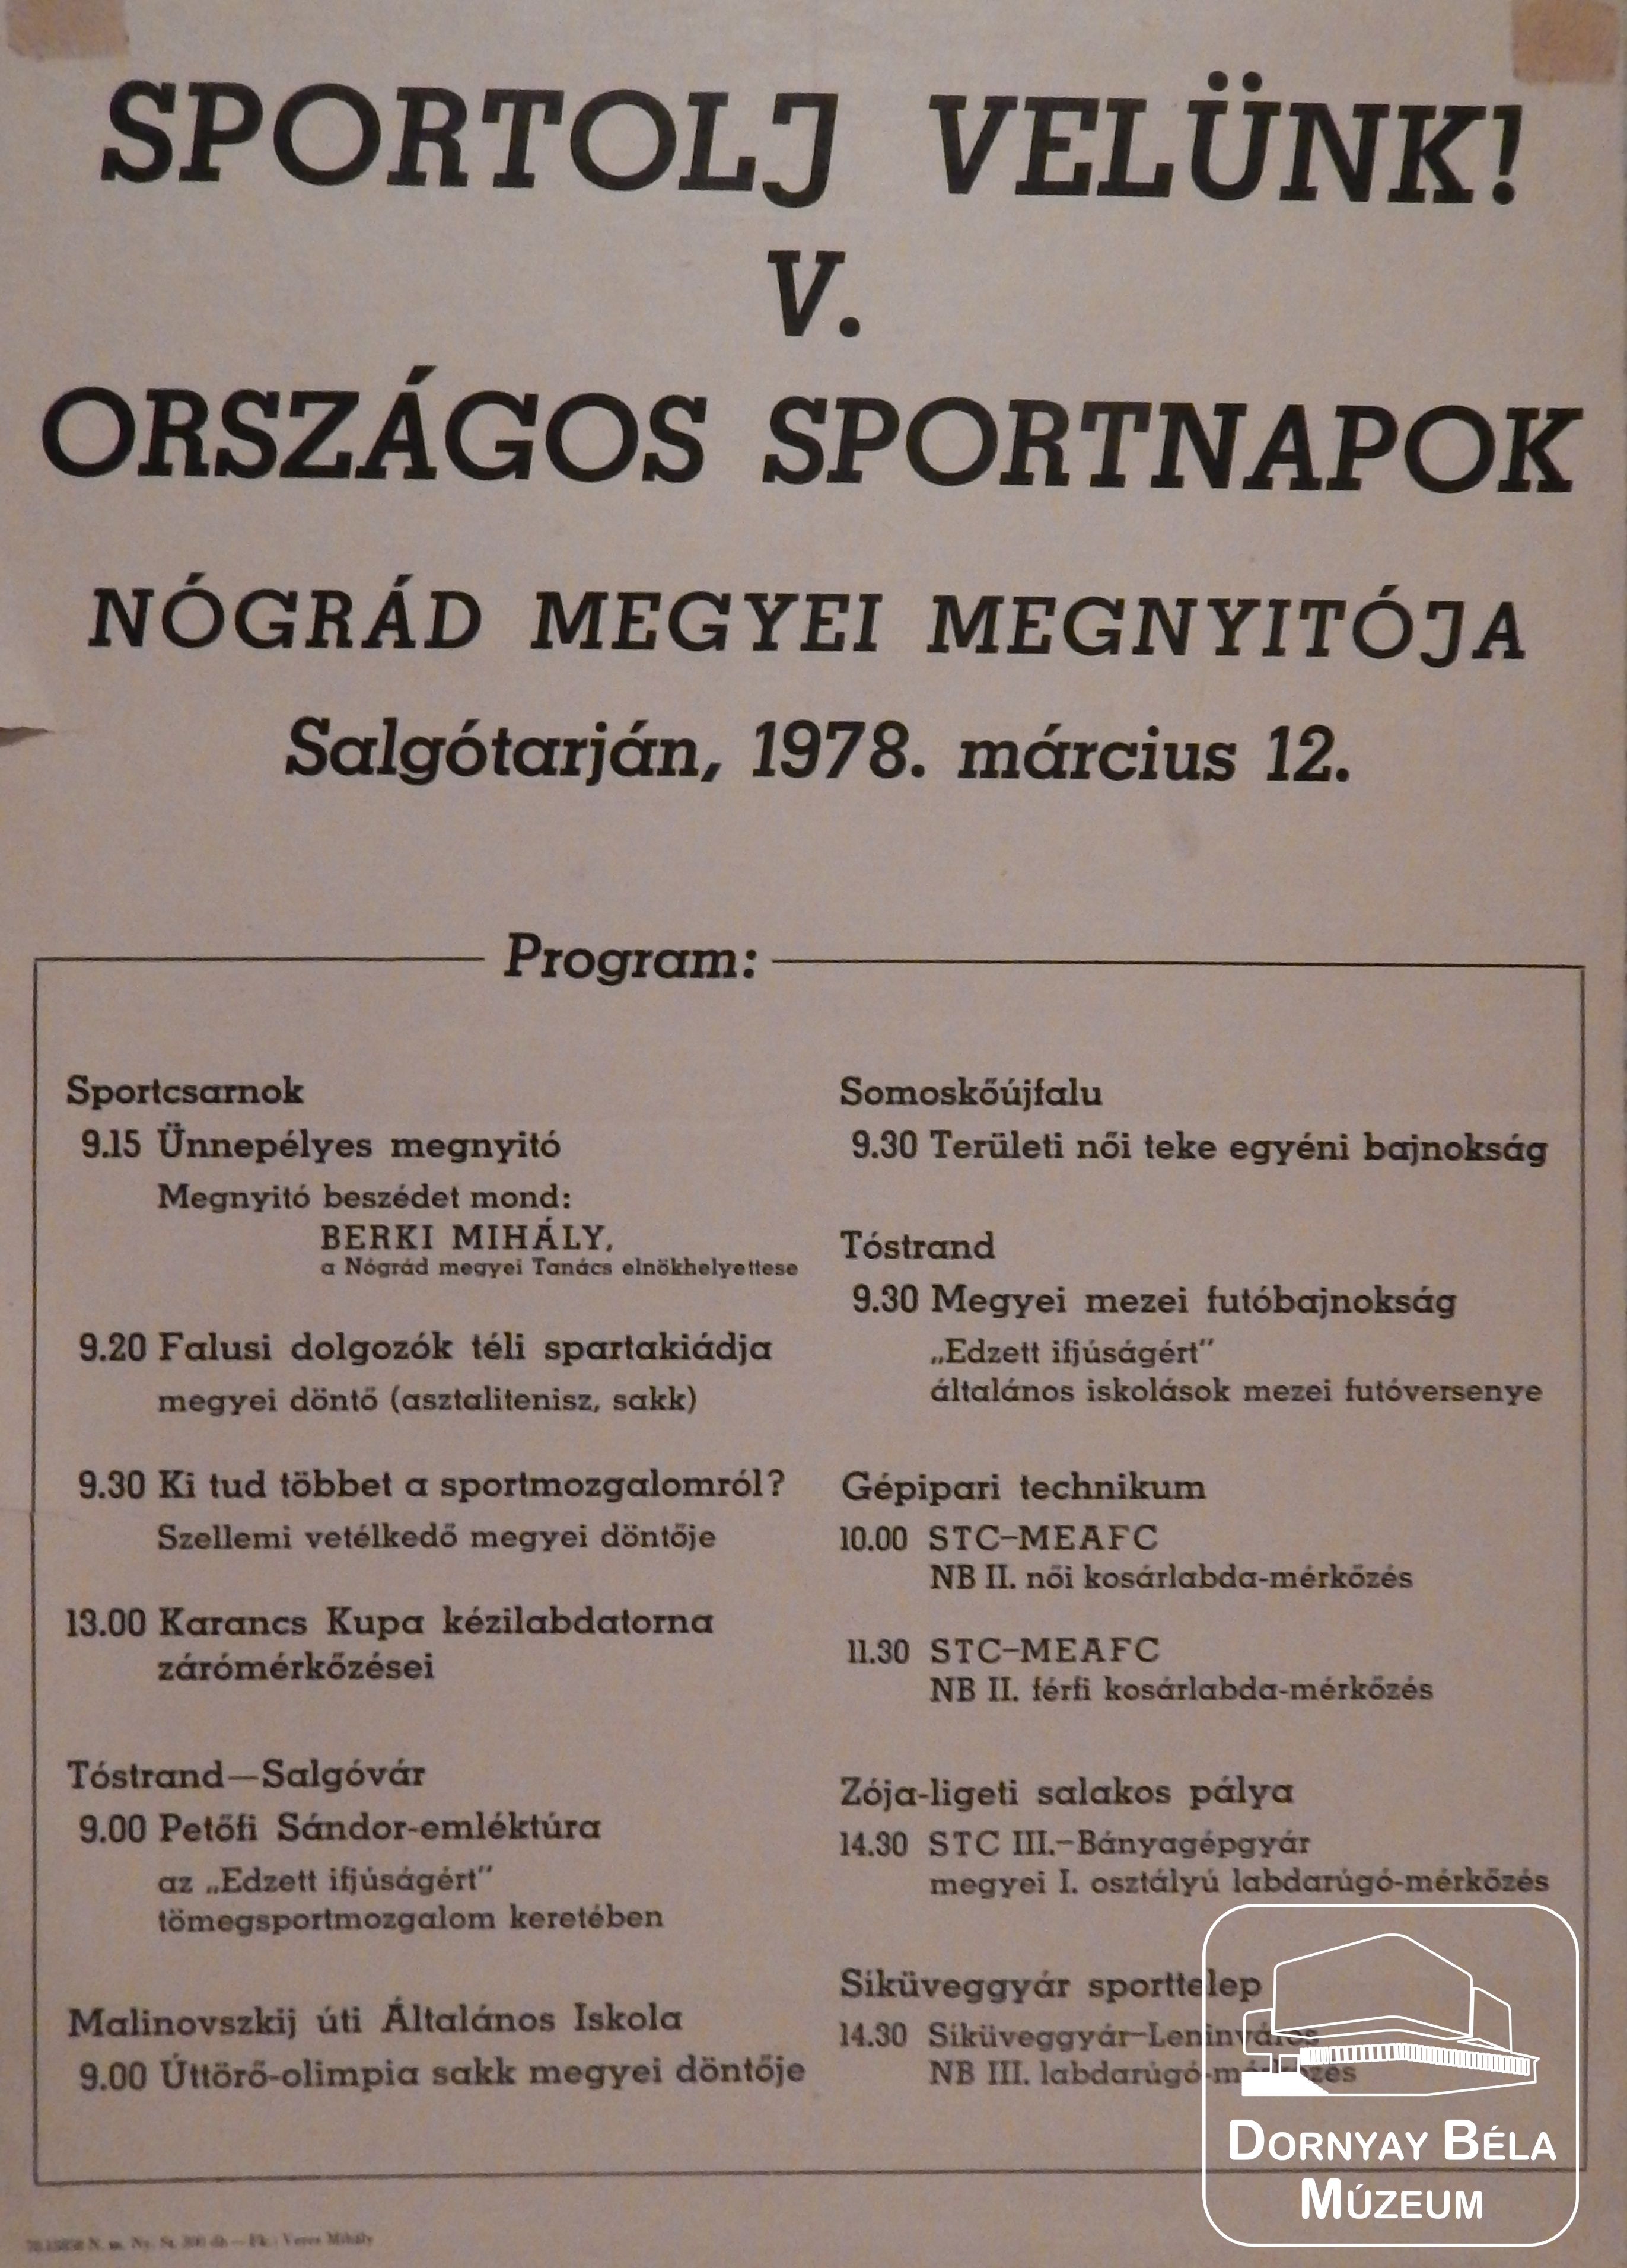 V. Országos Sportnapok (Dornyay Béla Múzeum, Salgótarján CC BY-NC-SA)